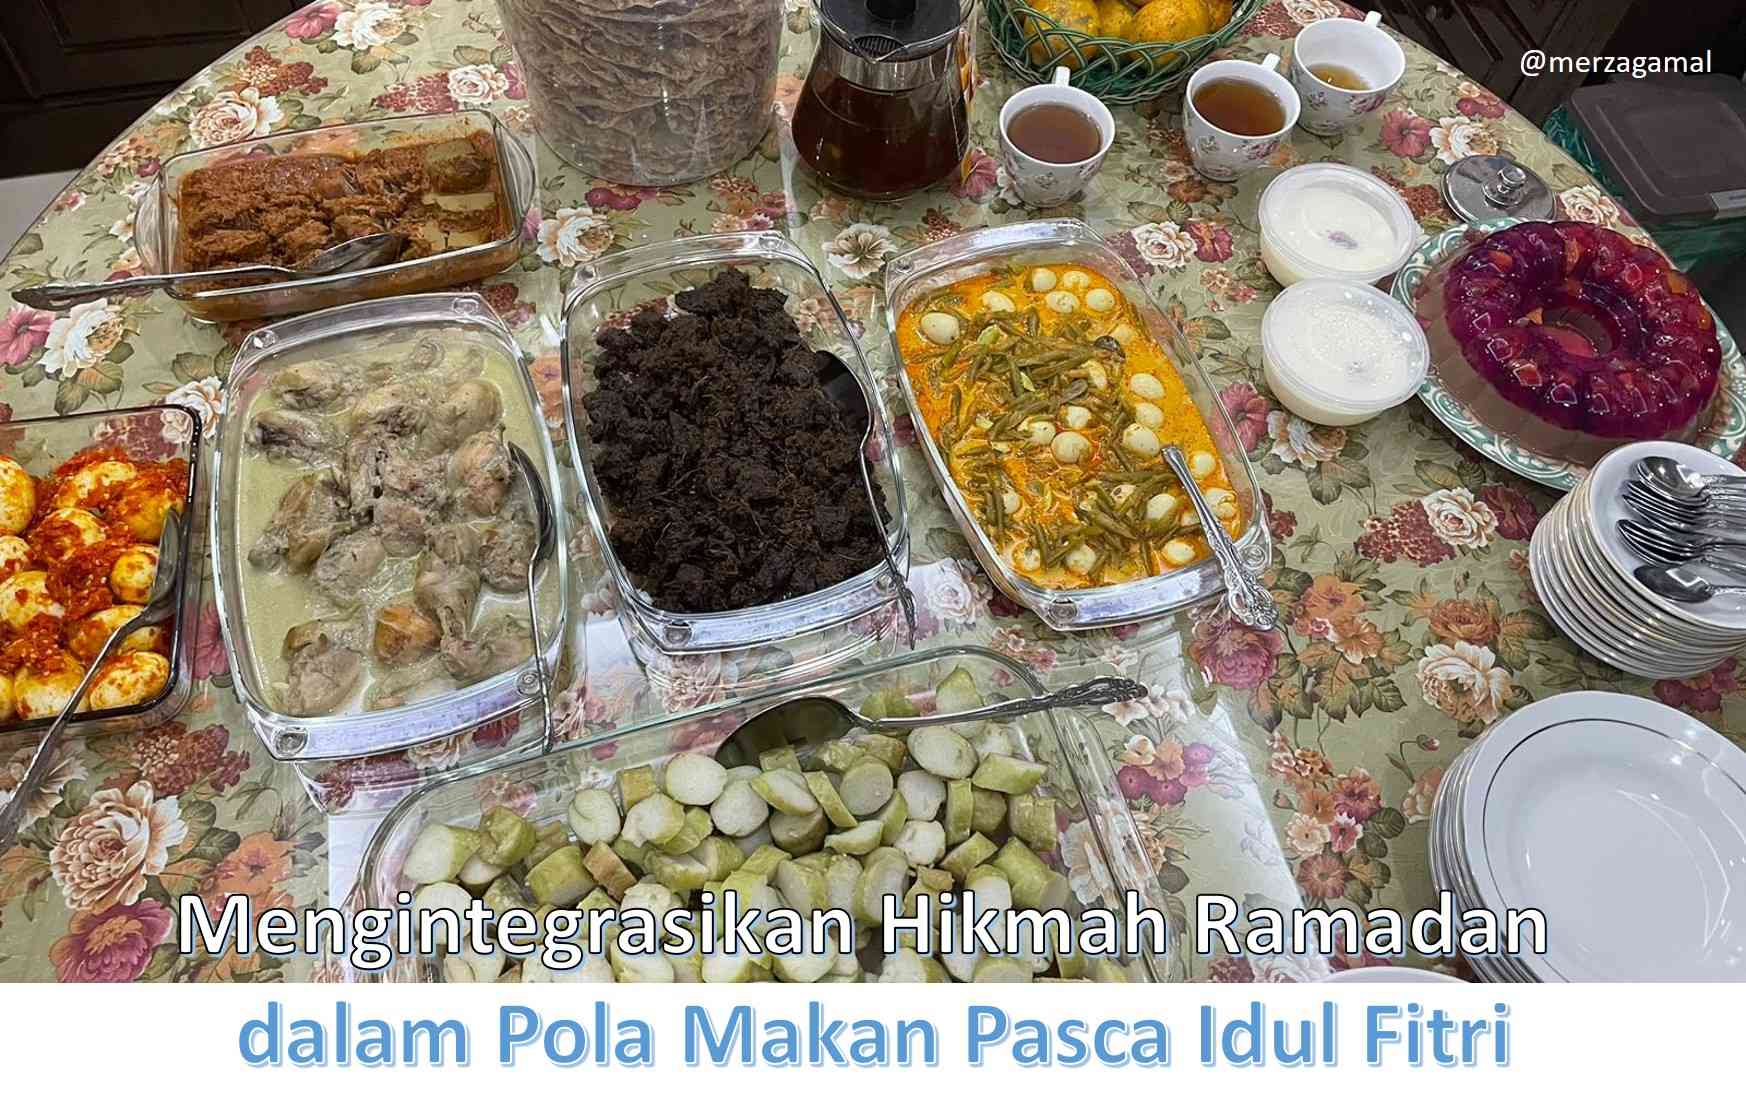 Mengintegrasikan Hikmah Ramadan dalam Pola Makan Pasca Idulfitri